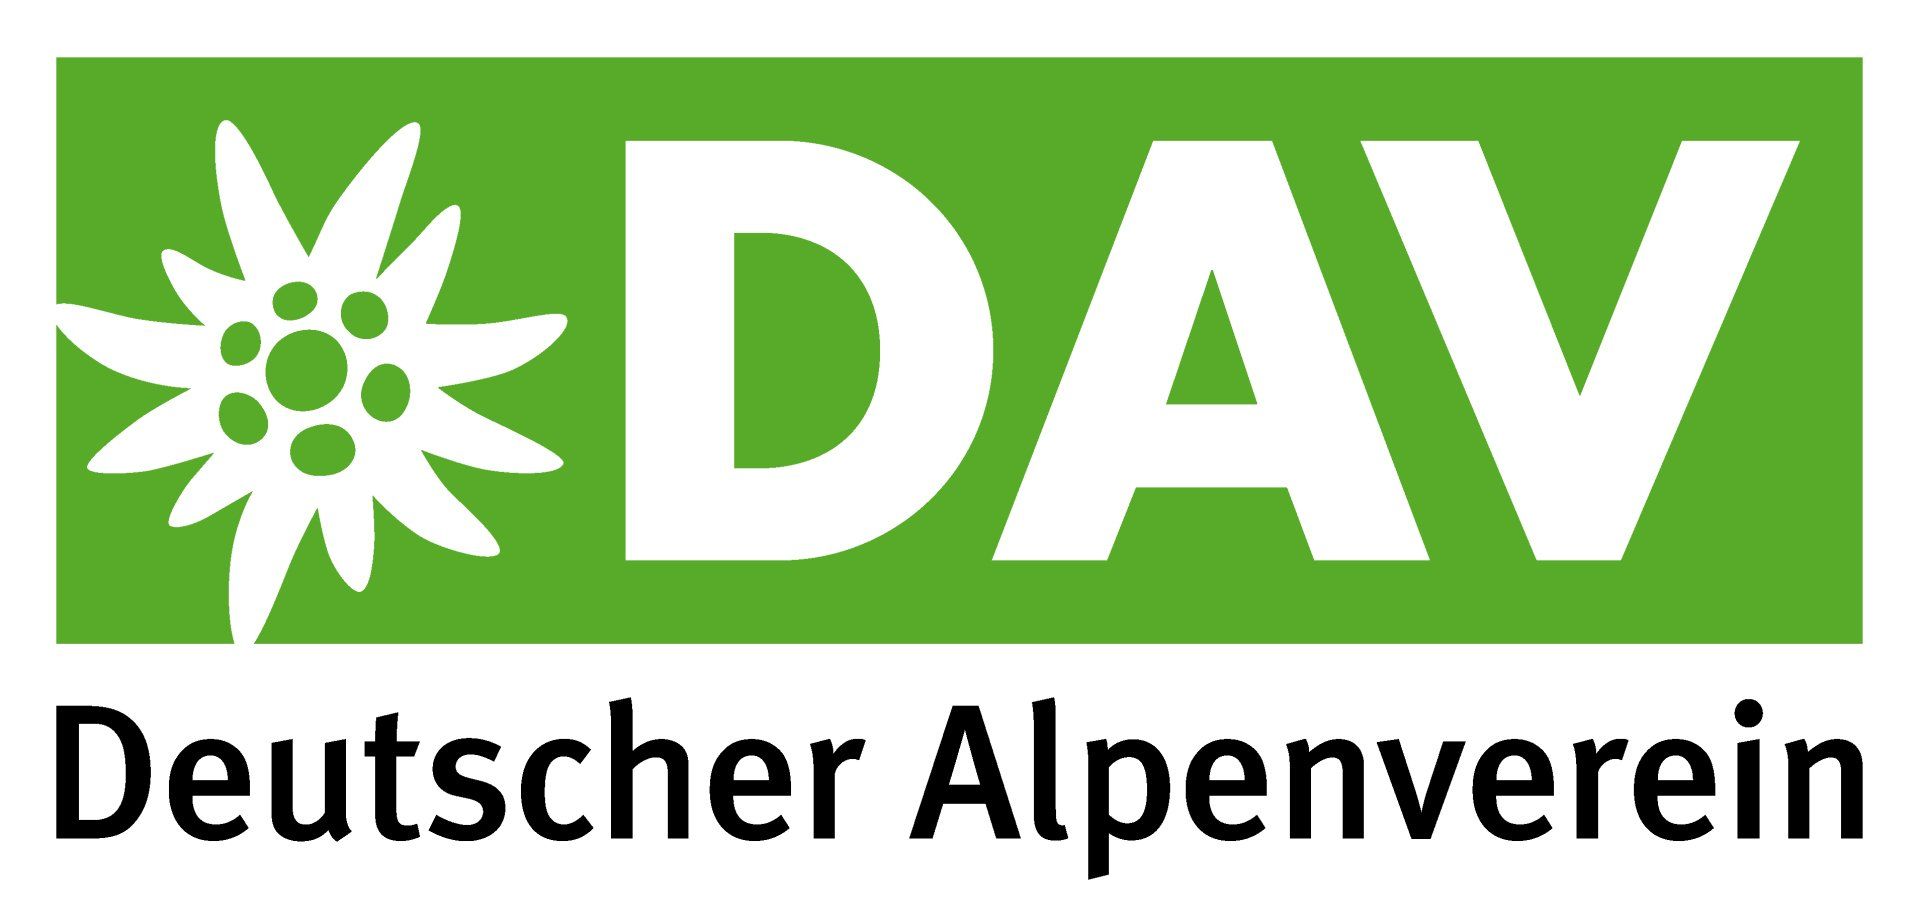 Es ist das Logo des Deutschen Alpenvereins zu sehen.